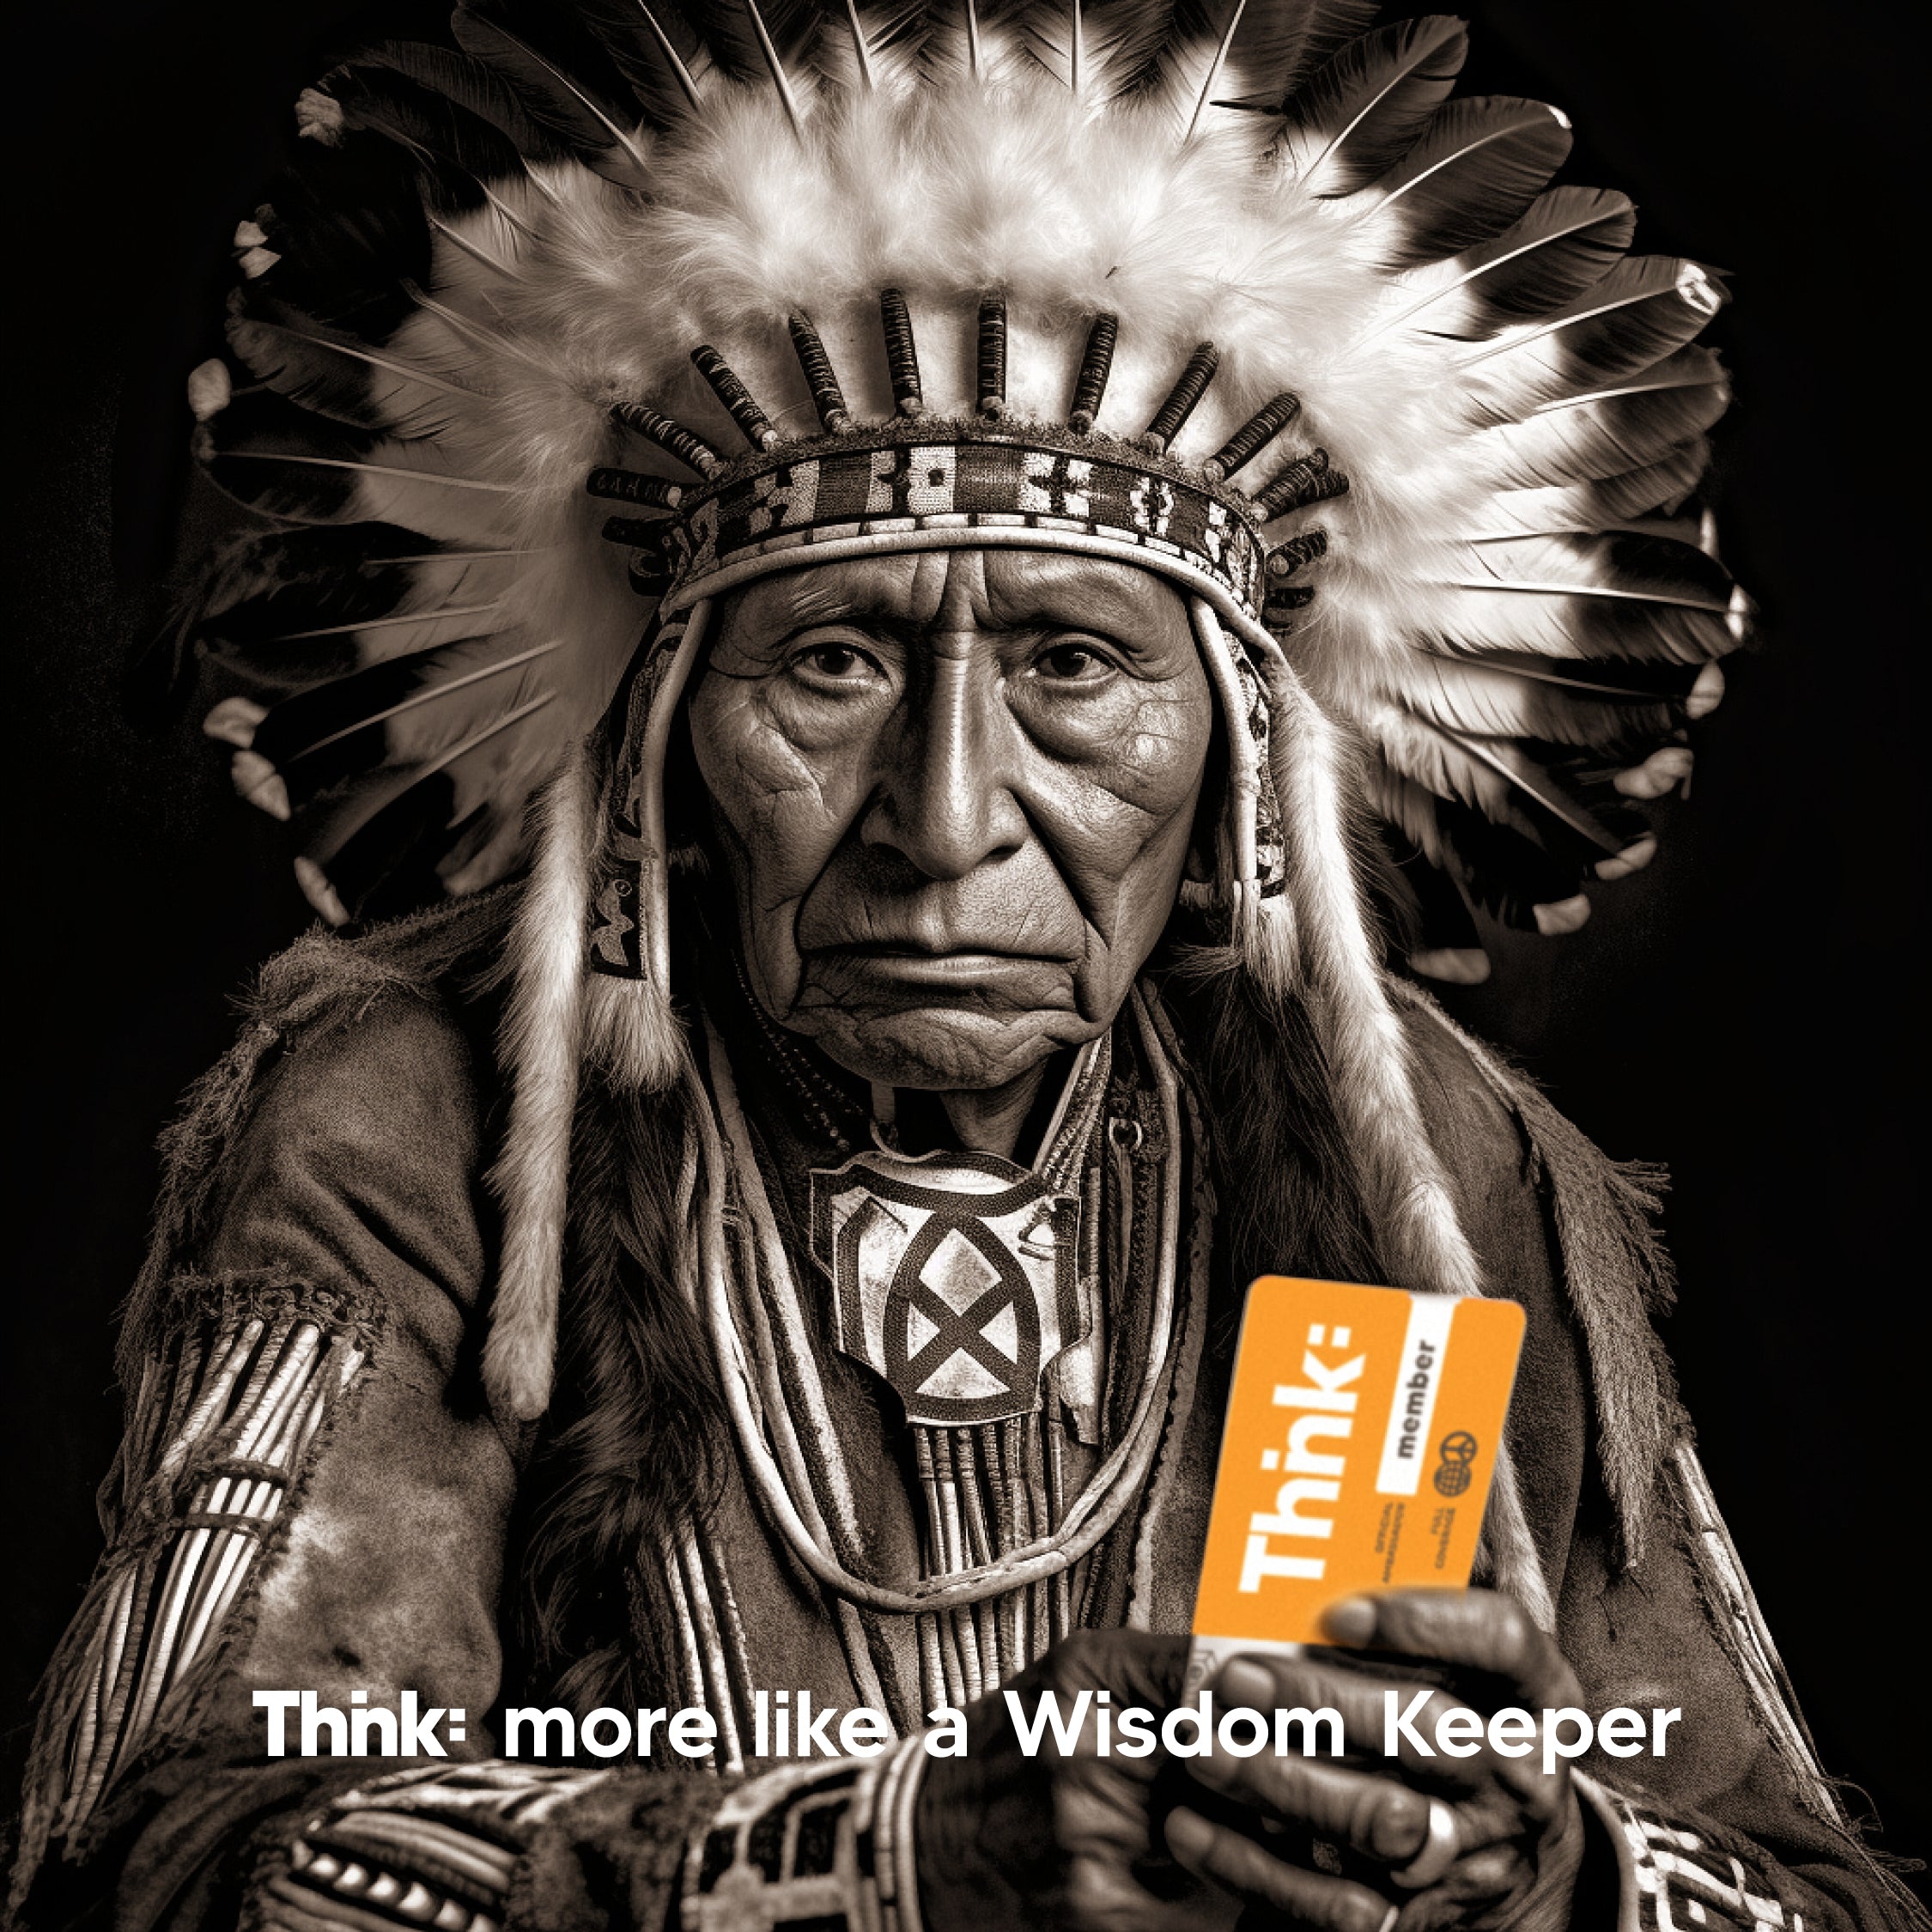 Thnk: More Like a Native American Wisdom Keeper